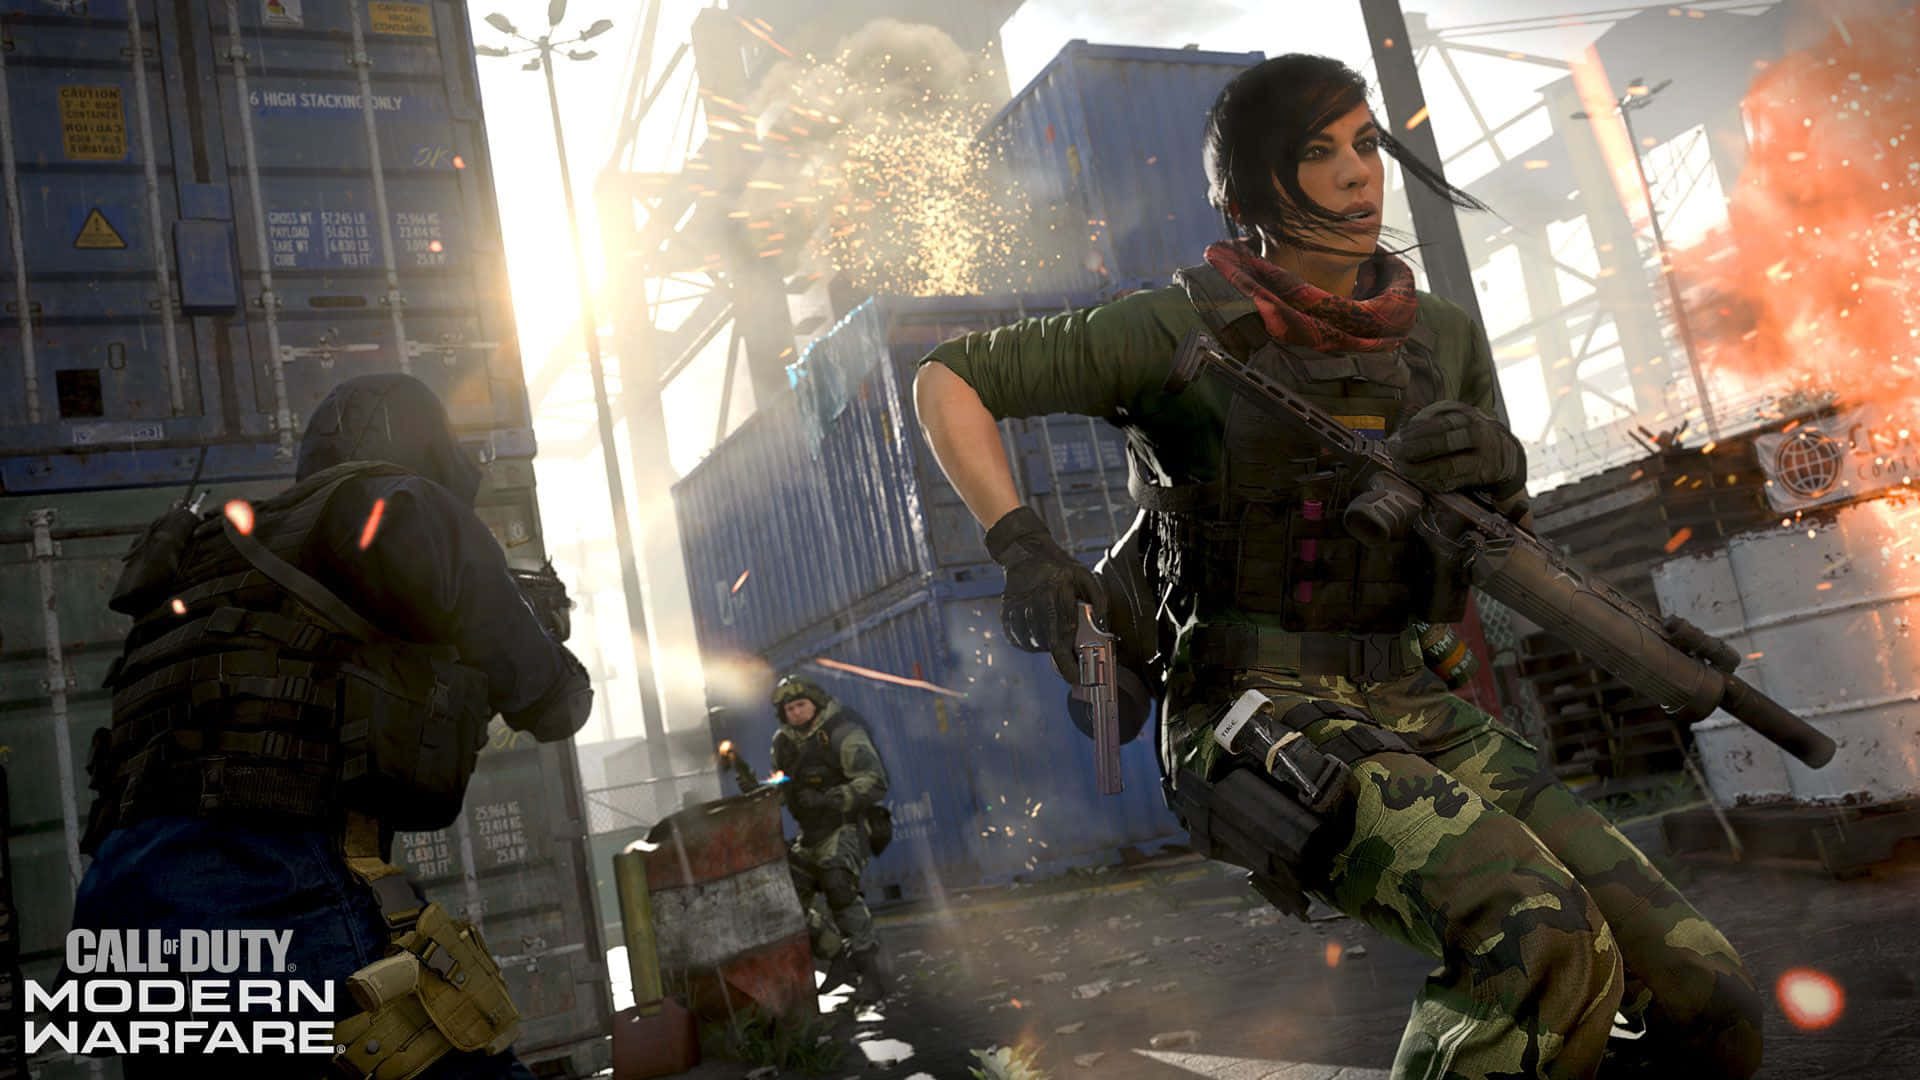 Intense Call of Duty Face-Off in a Stunning Battlefield Wallpaper